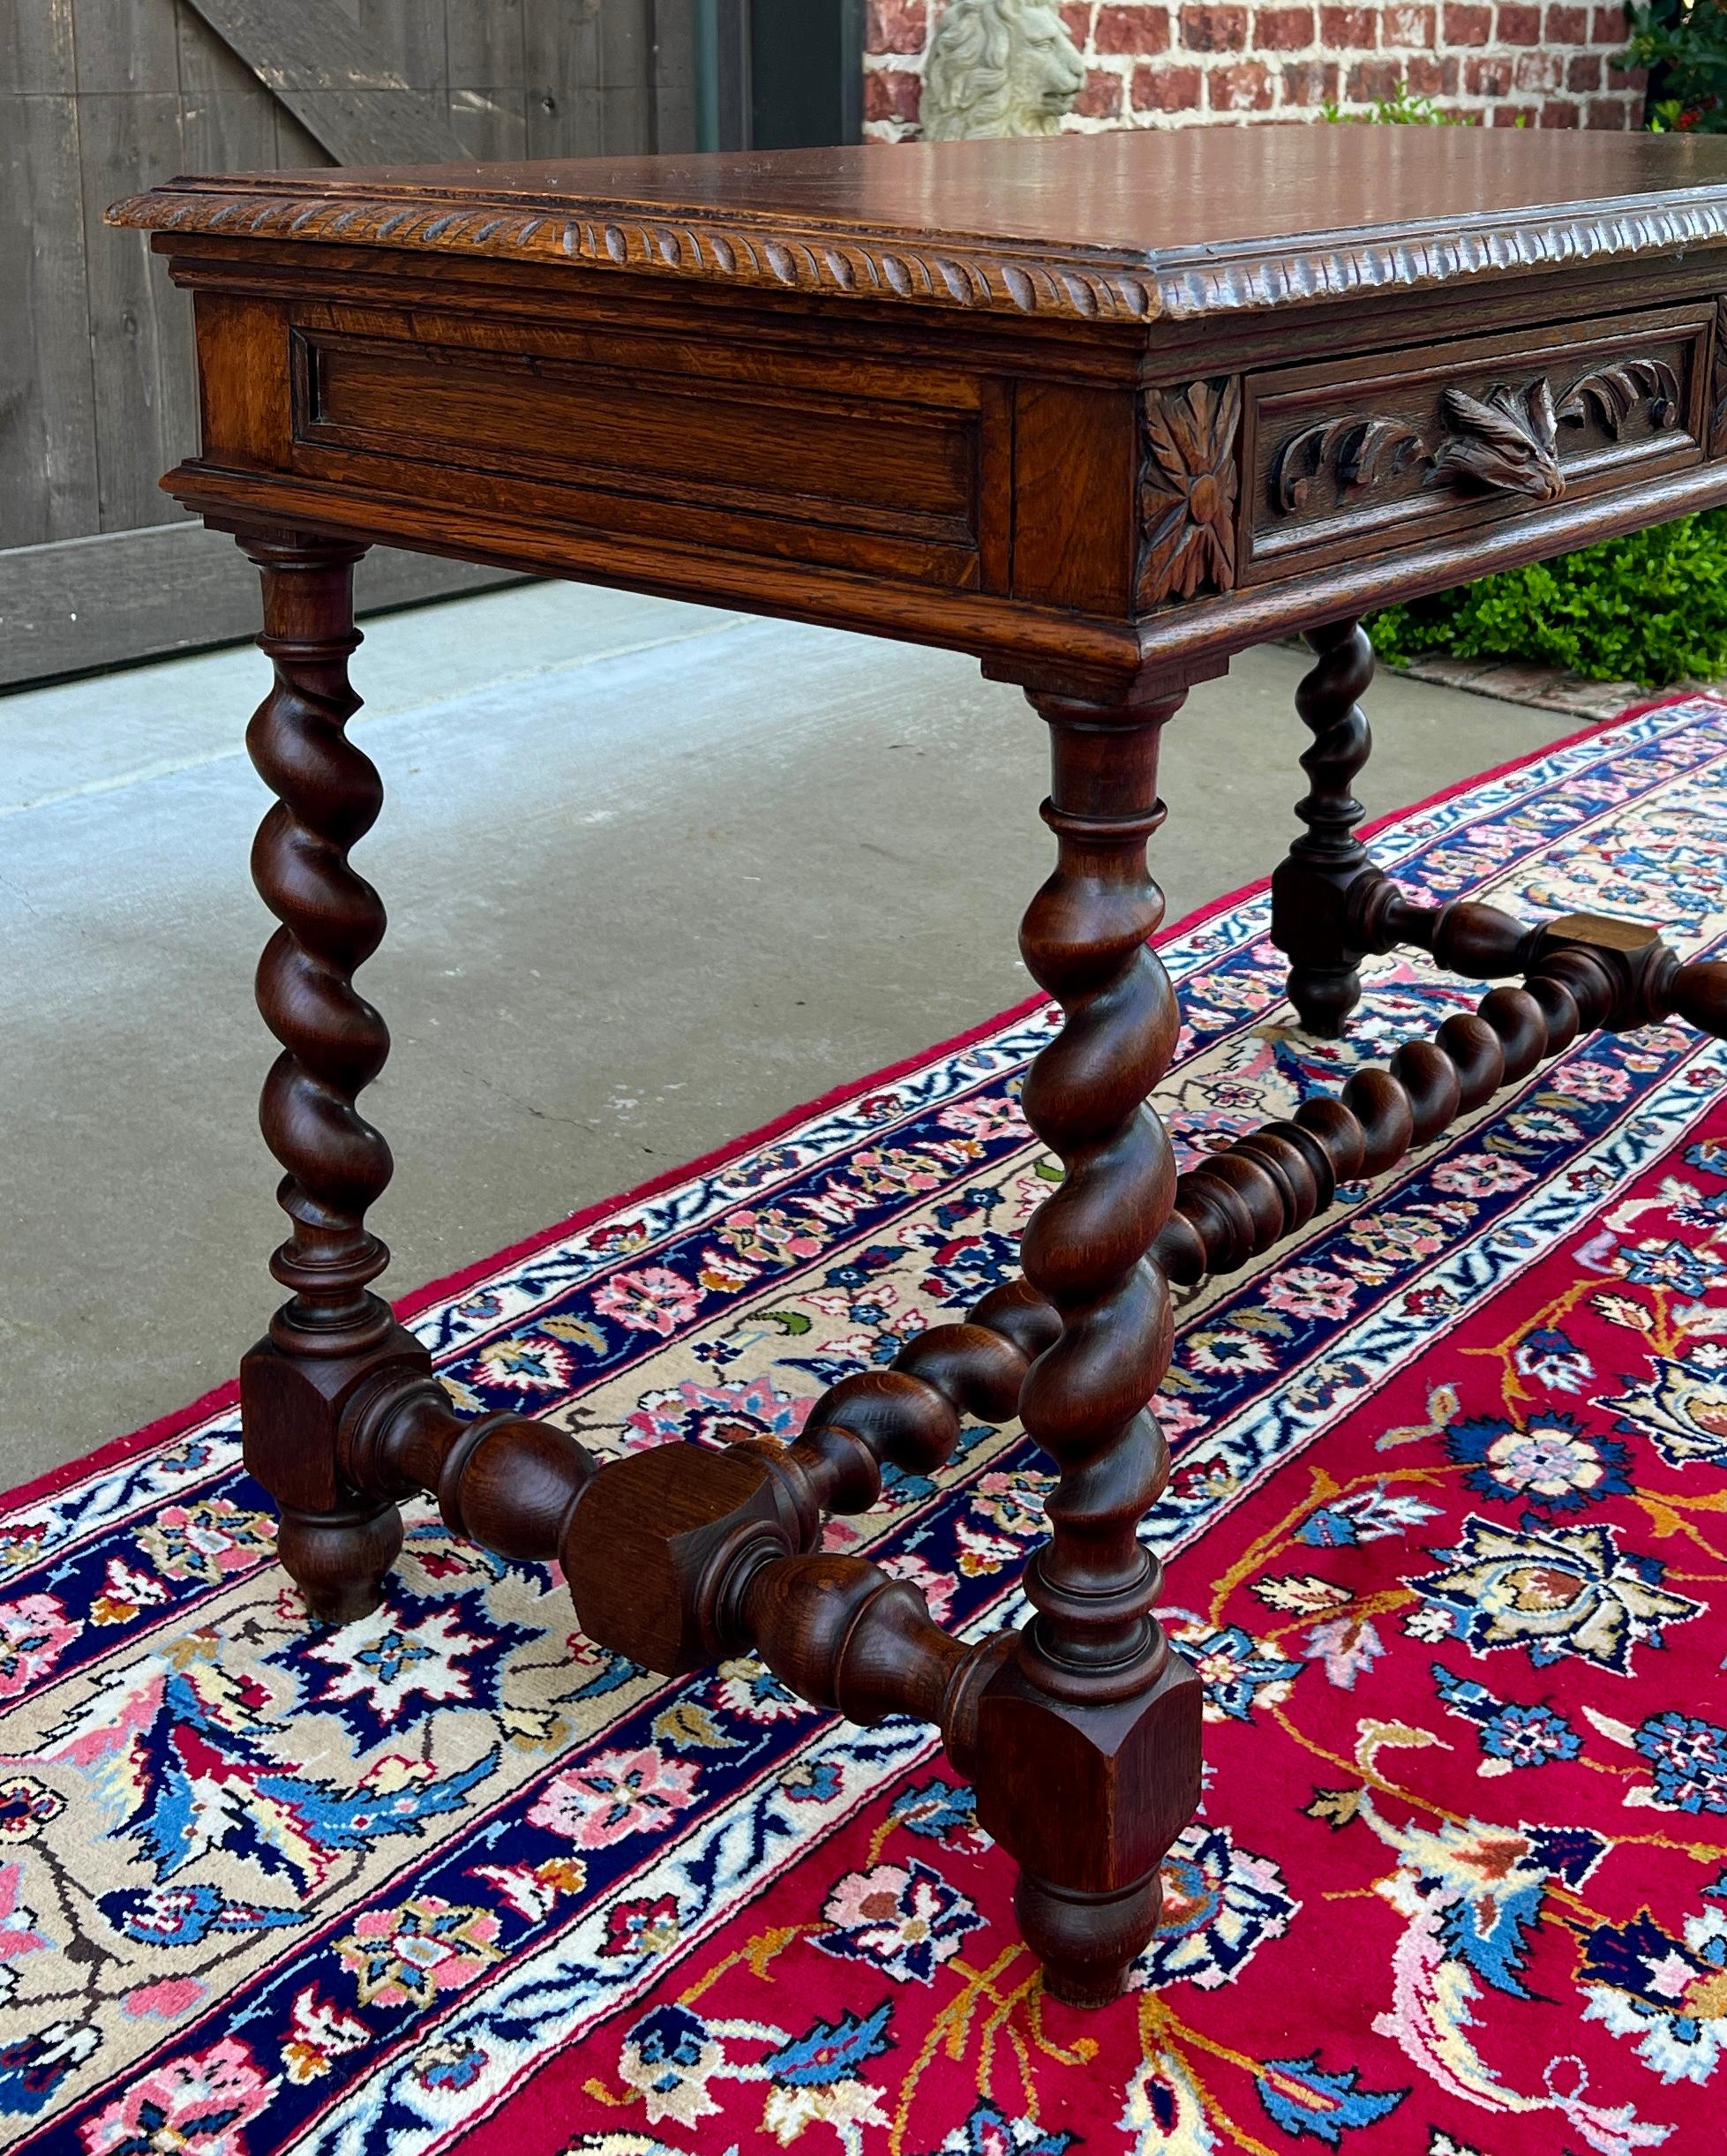 Antique French Desk Table Renaissance Revival Barley Twist Carved Tiger Oak 19C For Sale 9